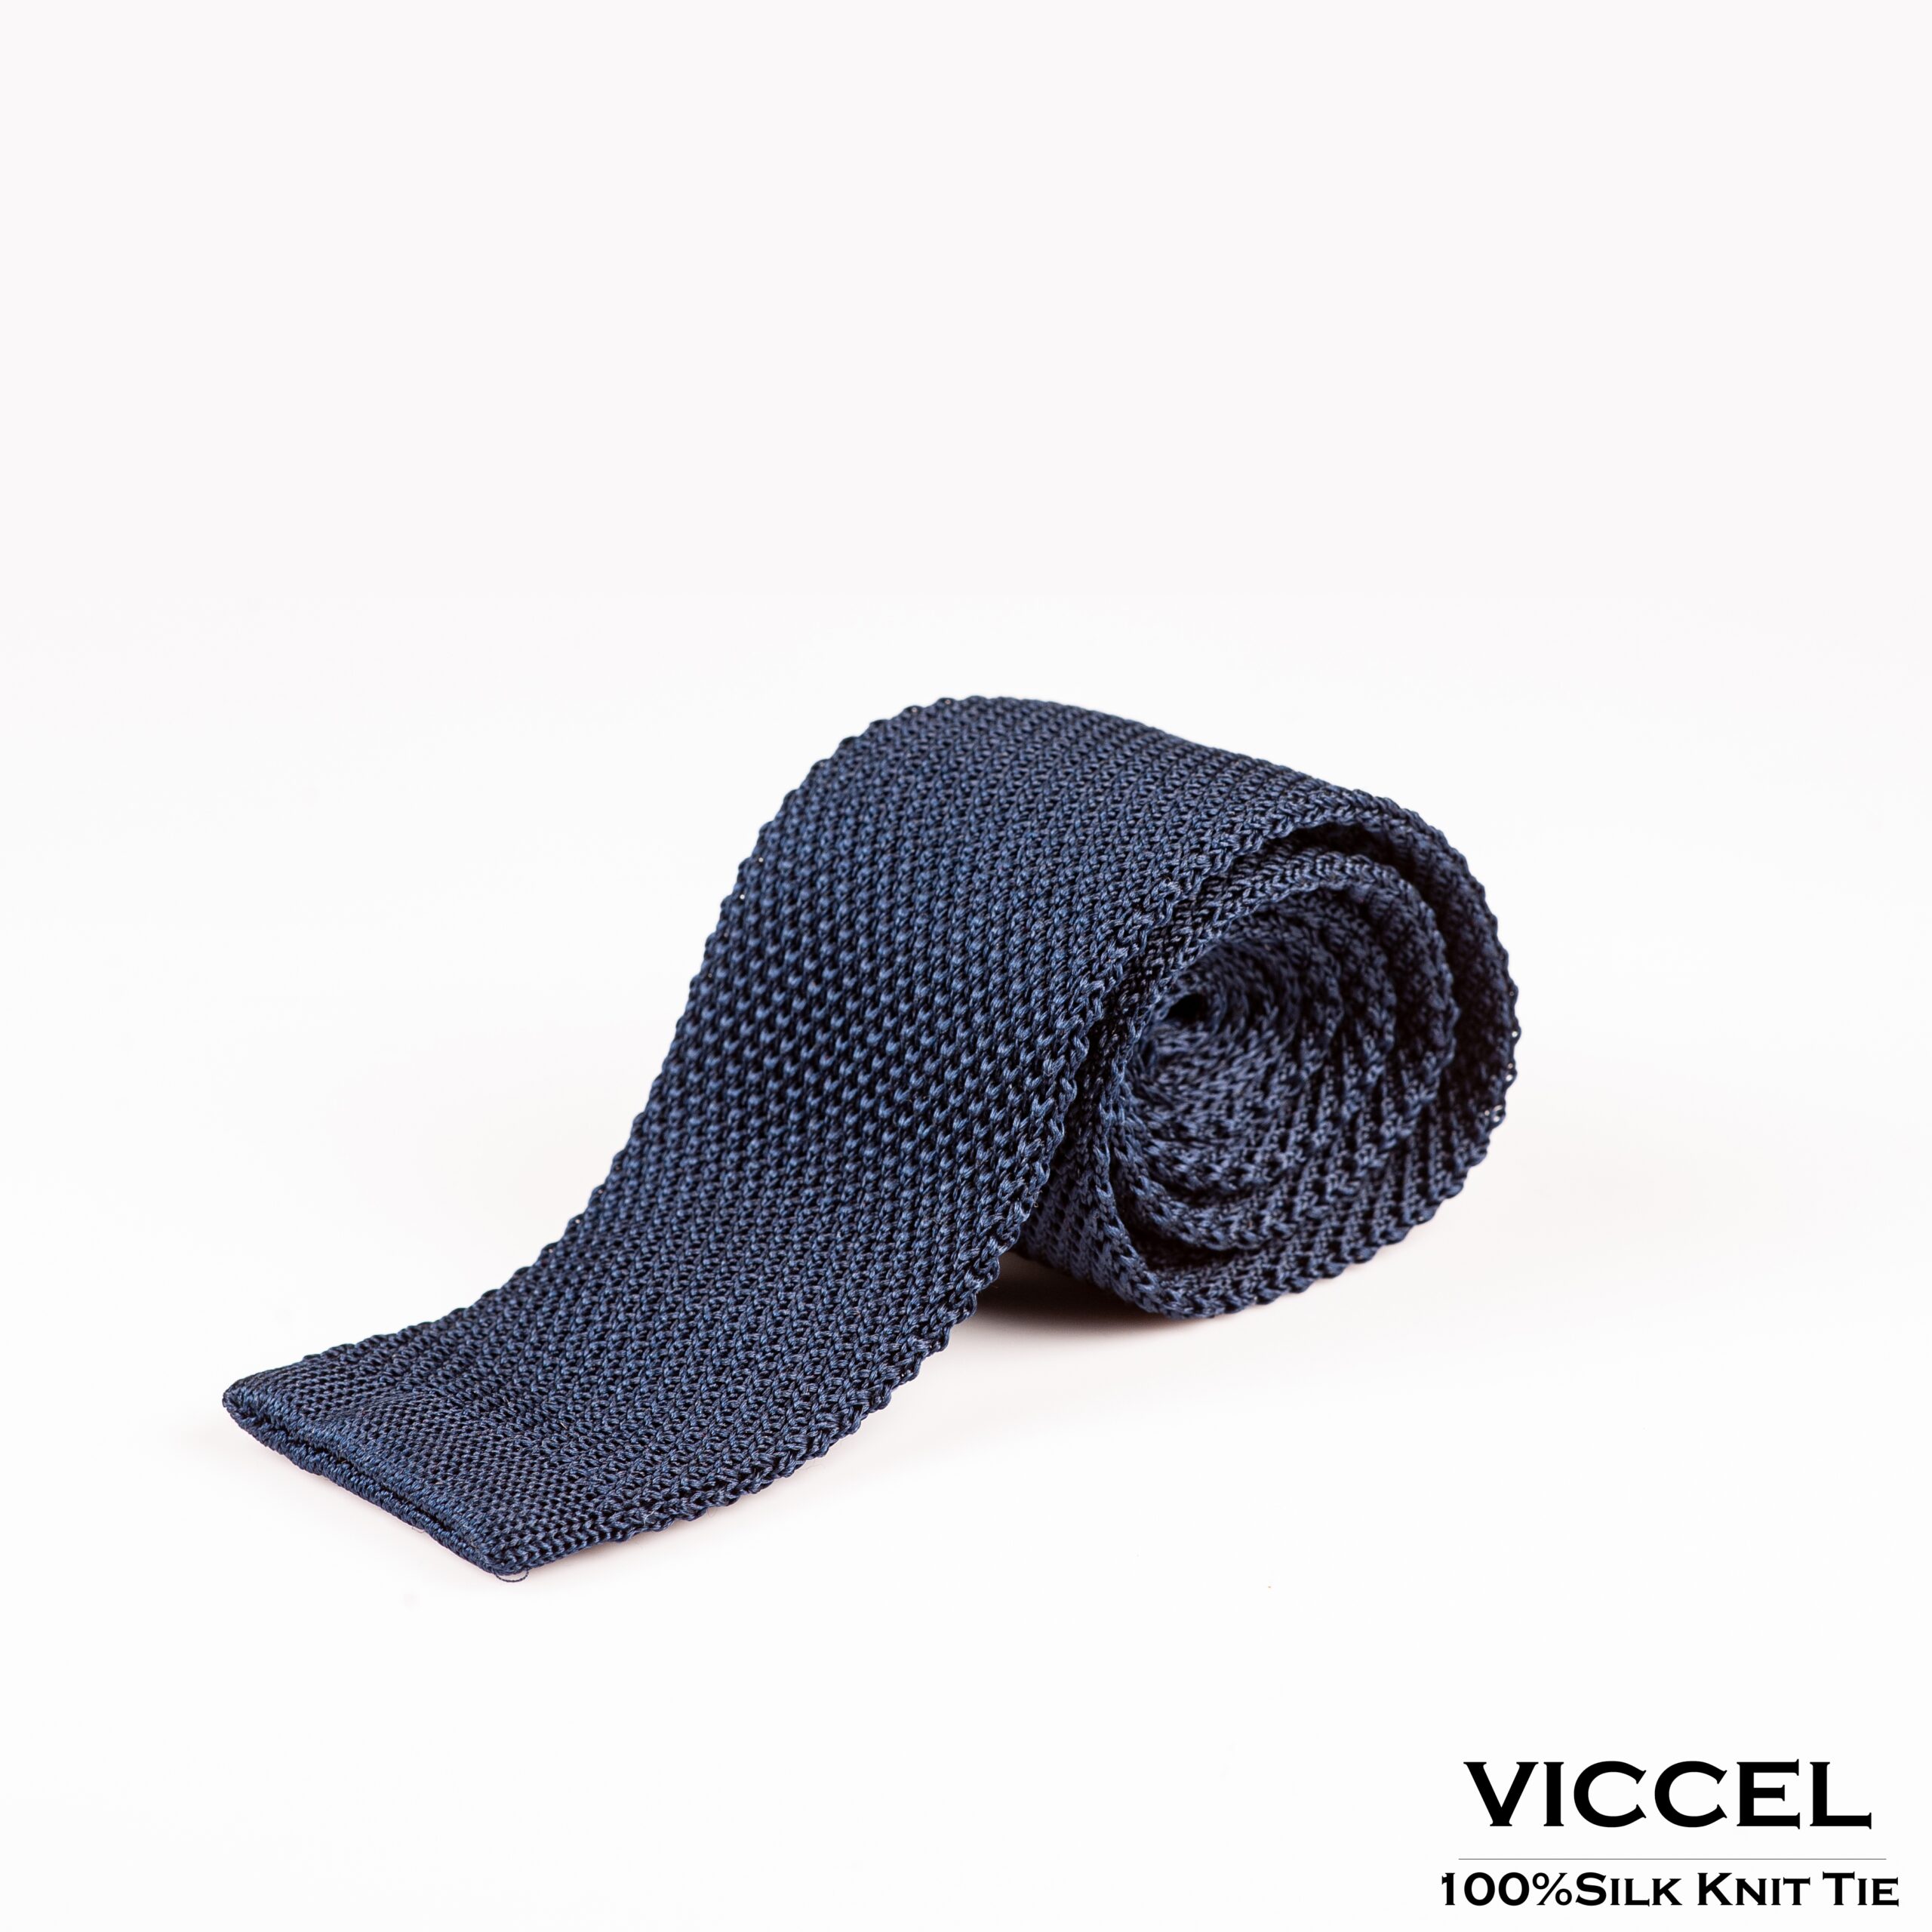 Navy Blue Knitted Silk Tie